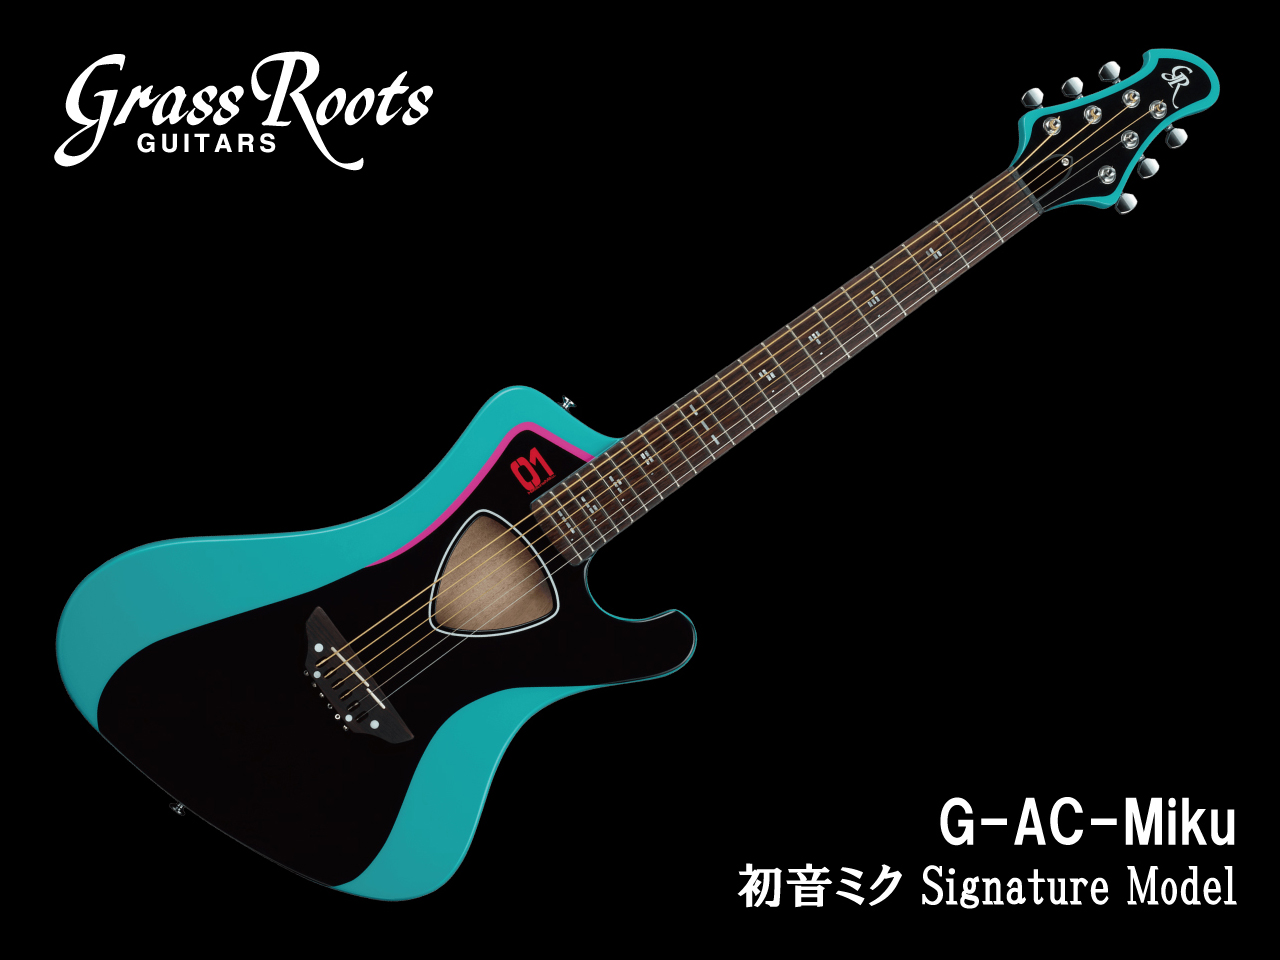 【即納可能】GrassRoots(グラスルーツ) G-AC-Miku / アコースティックギター (初音ミク モデル)